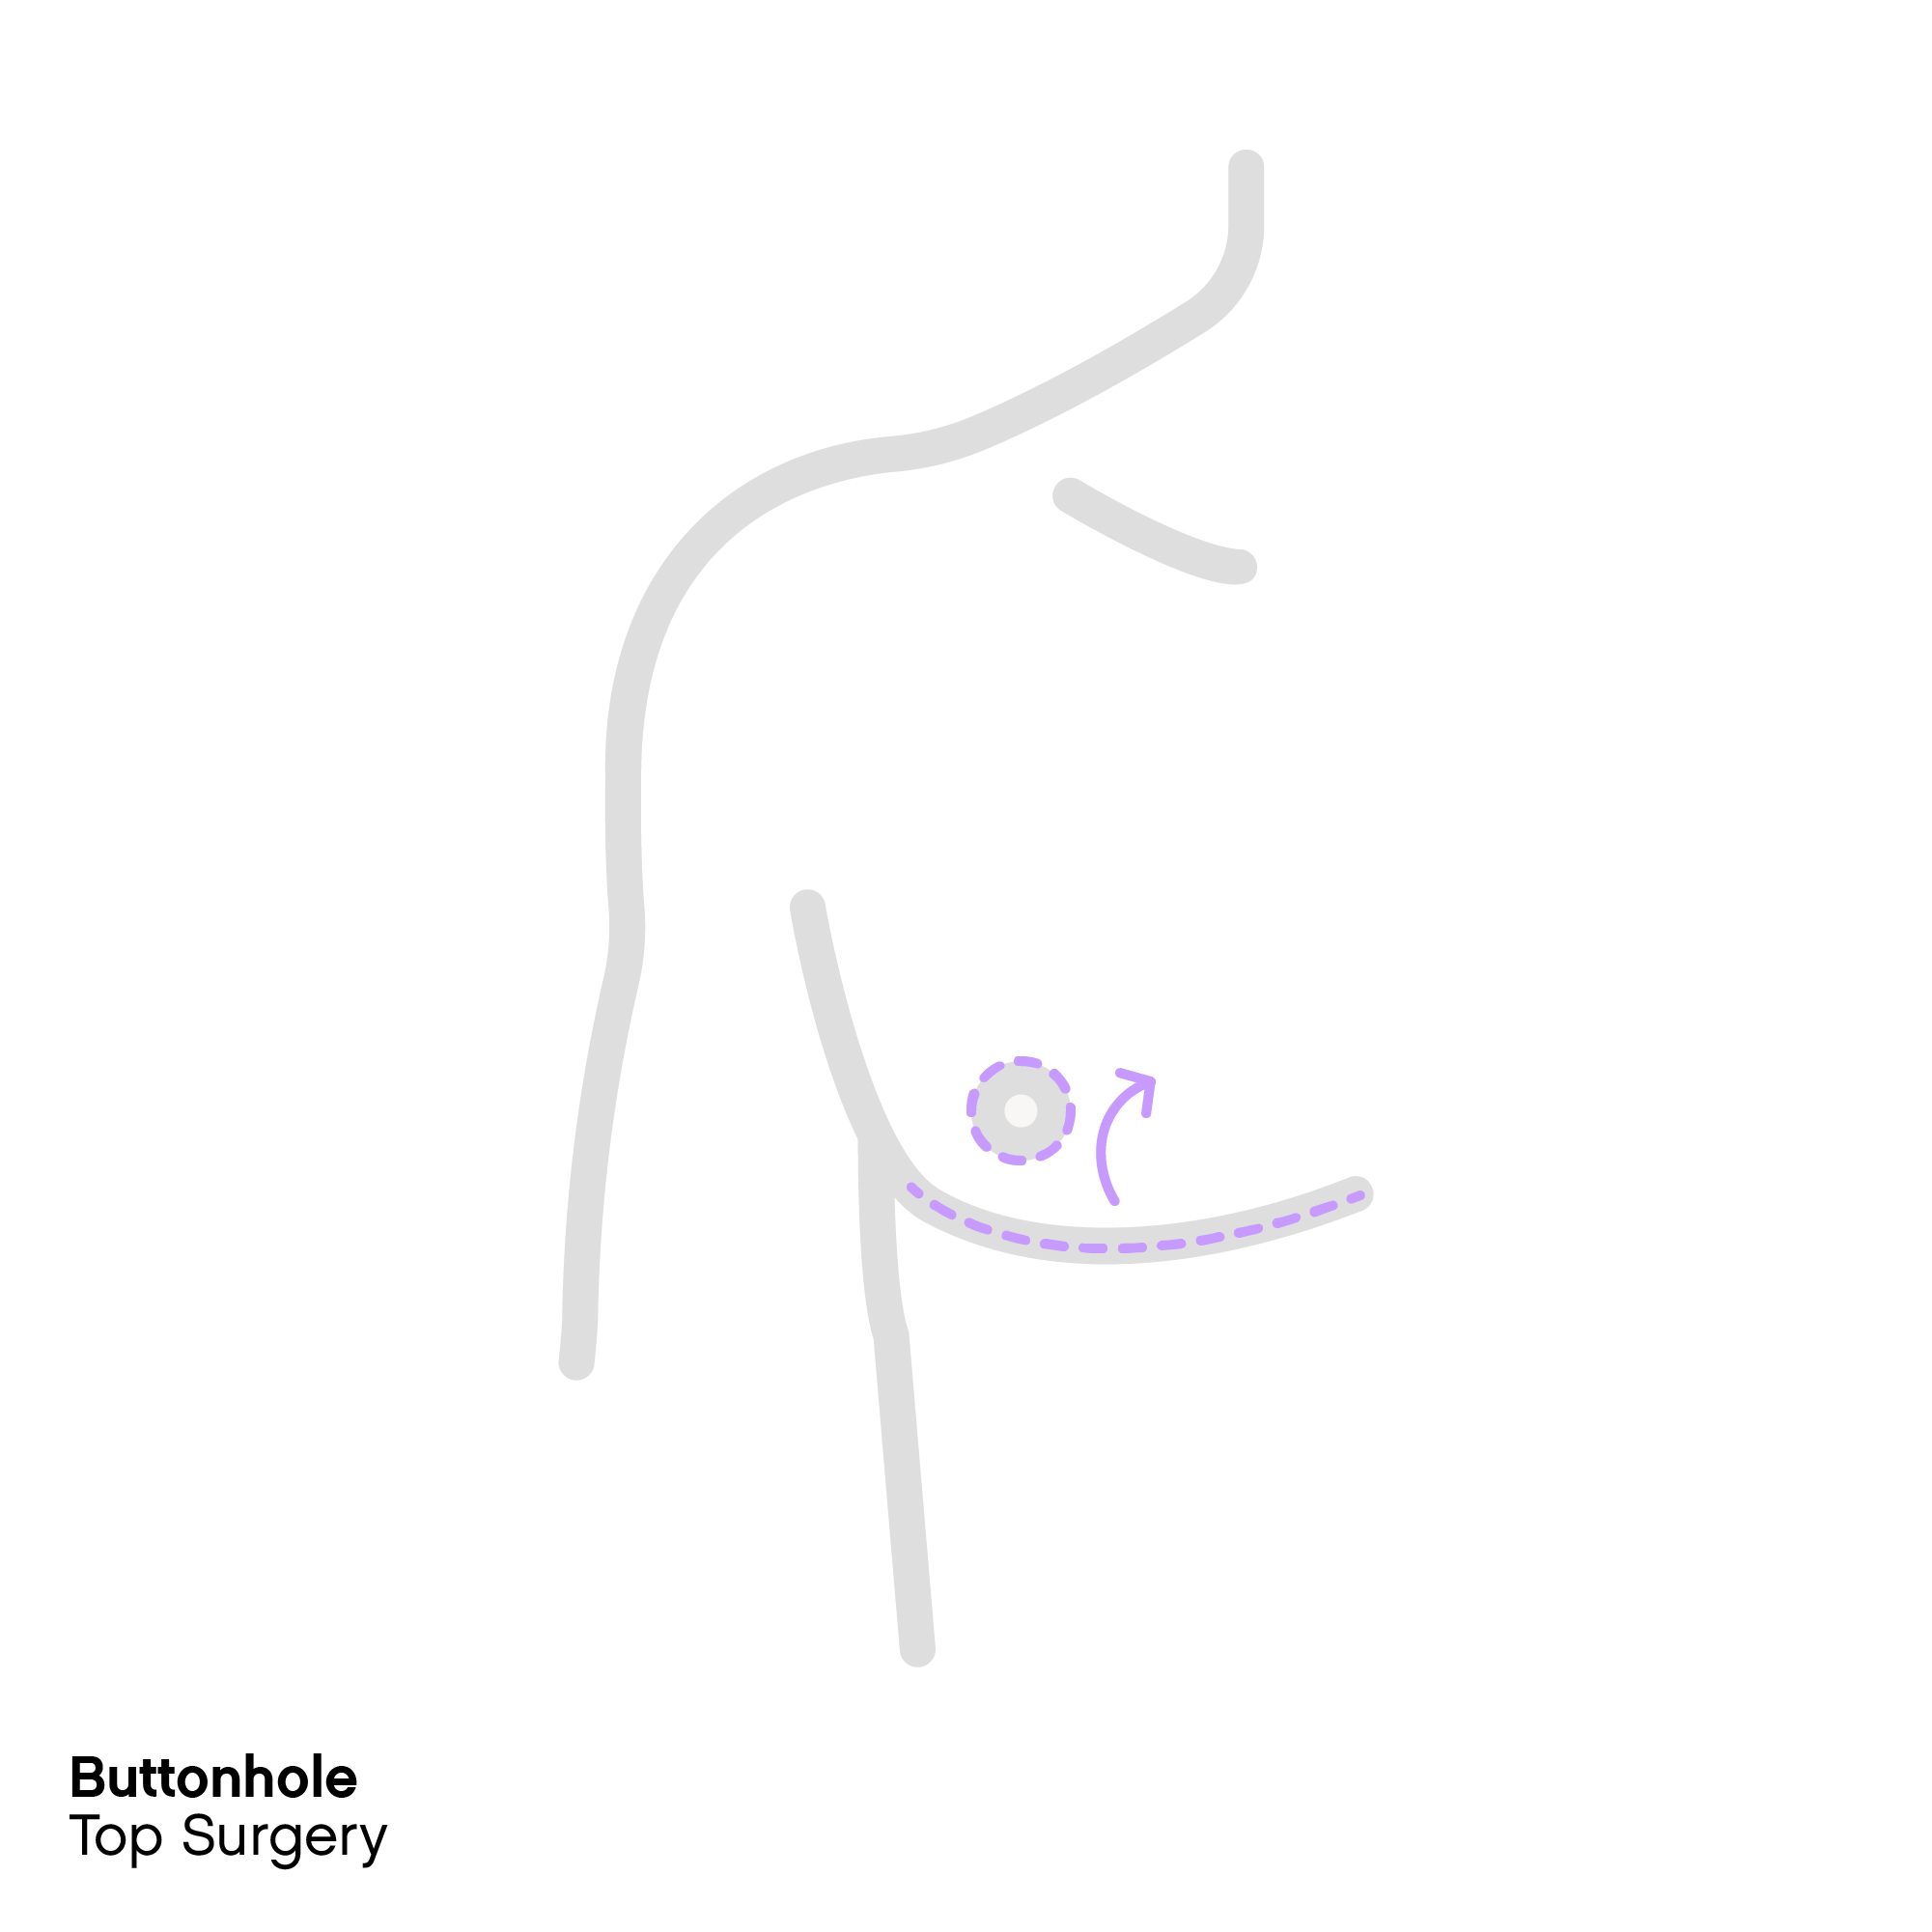 Buttonhole top surgery